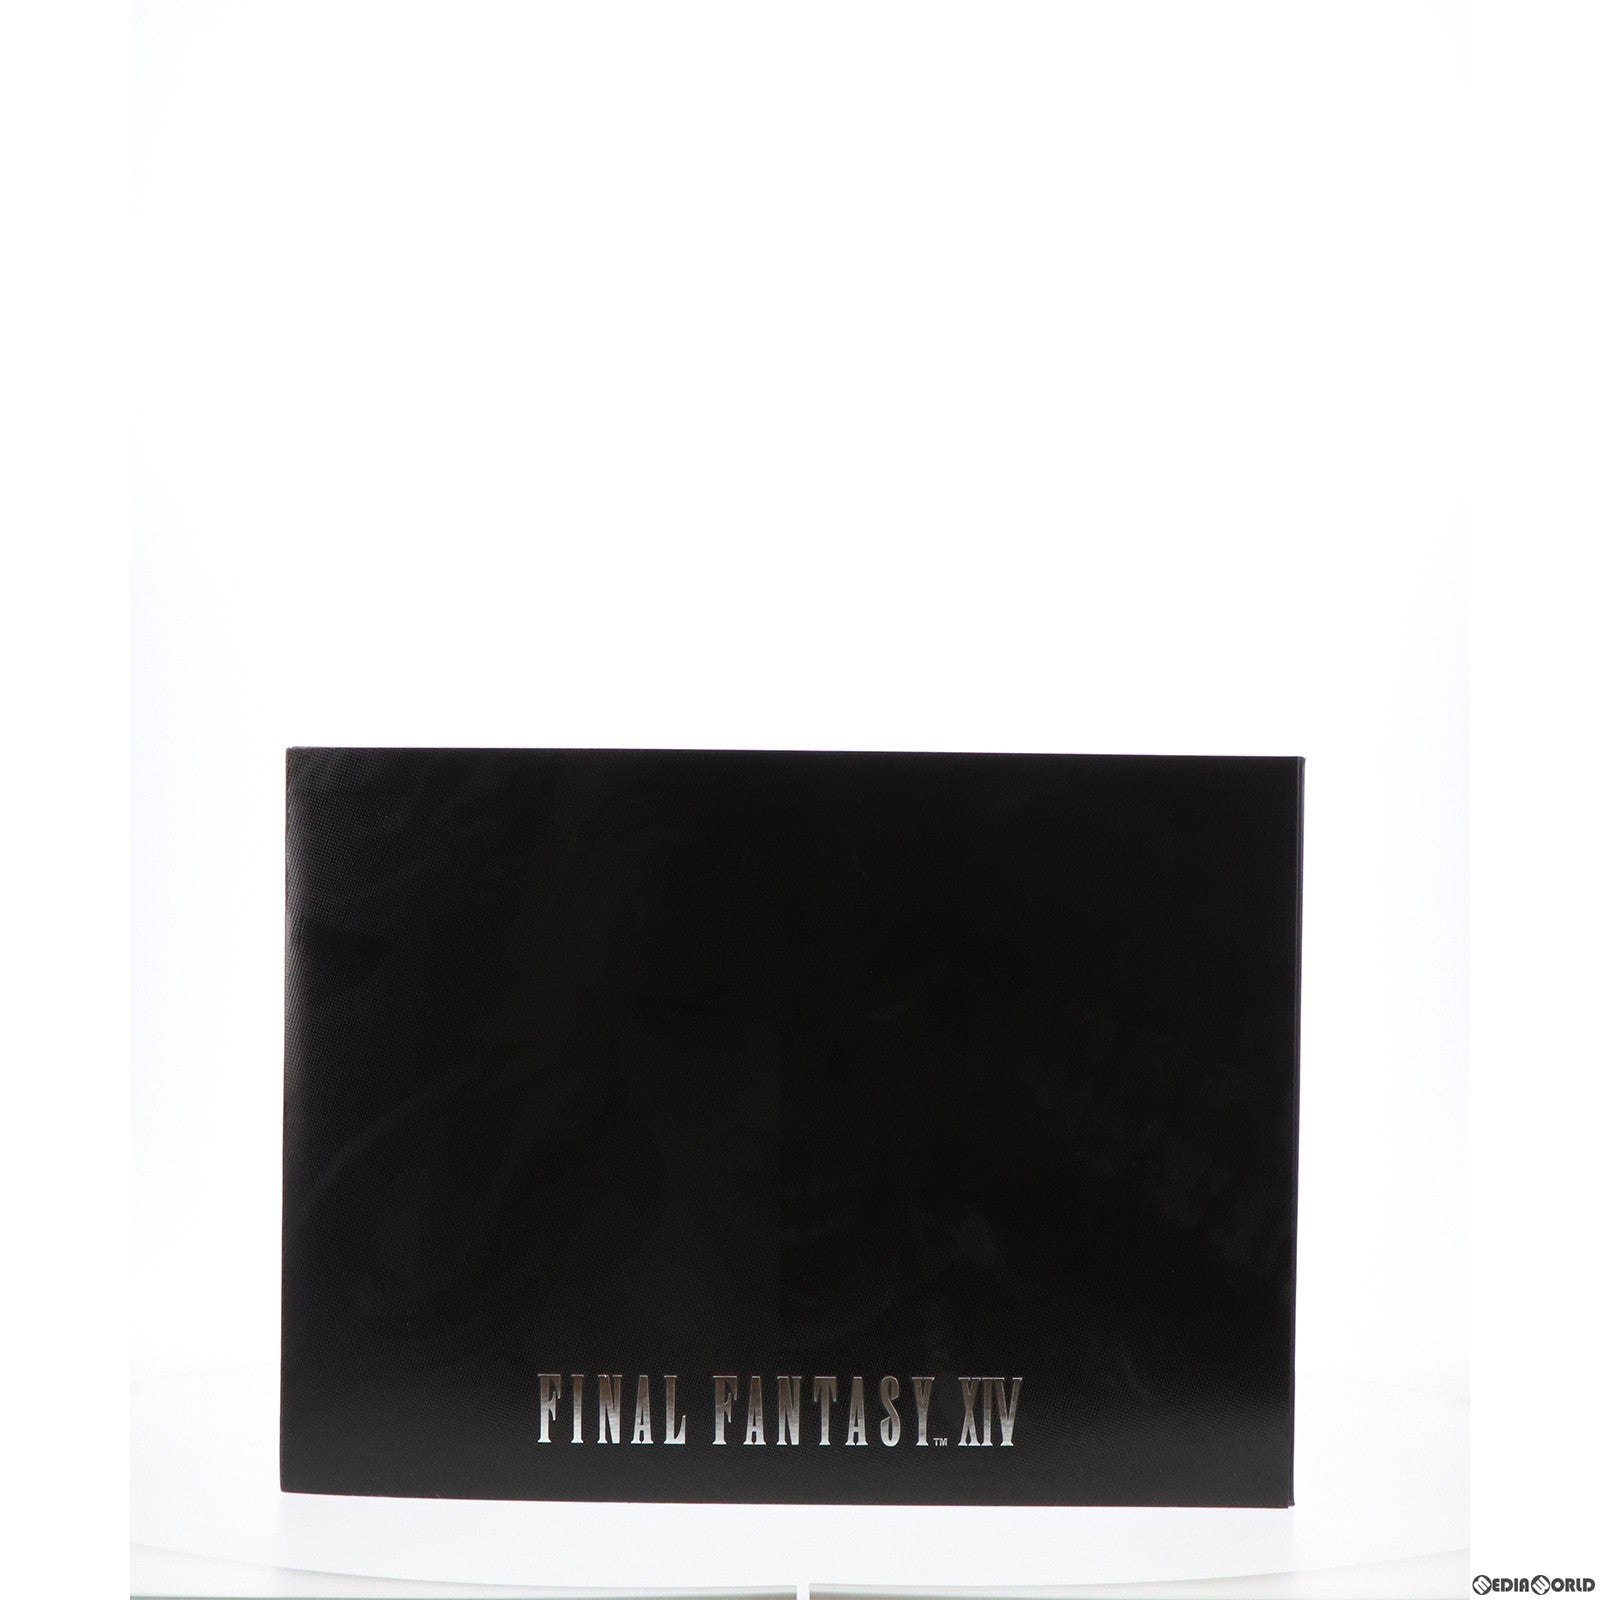 【中古即納】[FIG]ハイデリン&ゾディアーク FINAL FANTASY XIV(ファイナルファンタジー14) マイスタークオリティ フィギュア 完成品 スクウェア・エニックス(20240415)